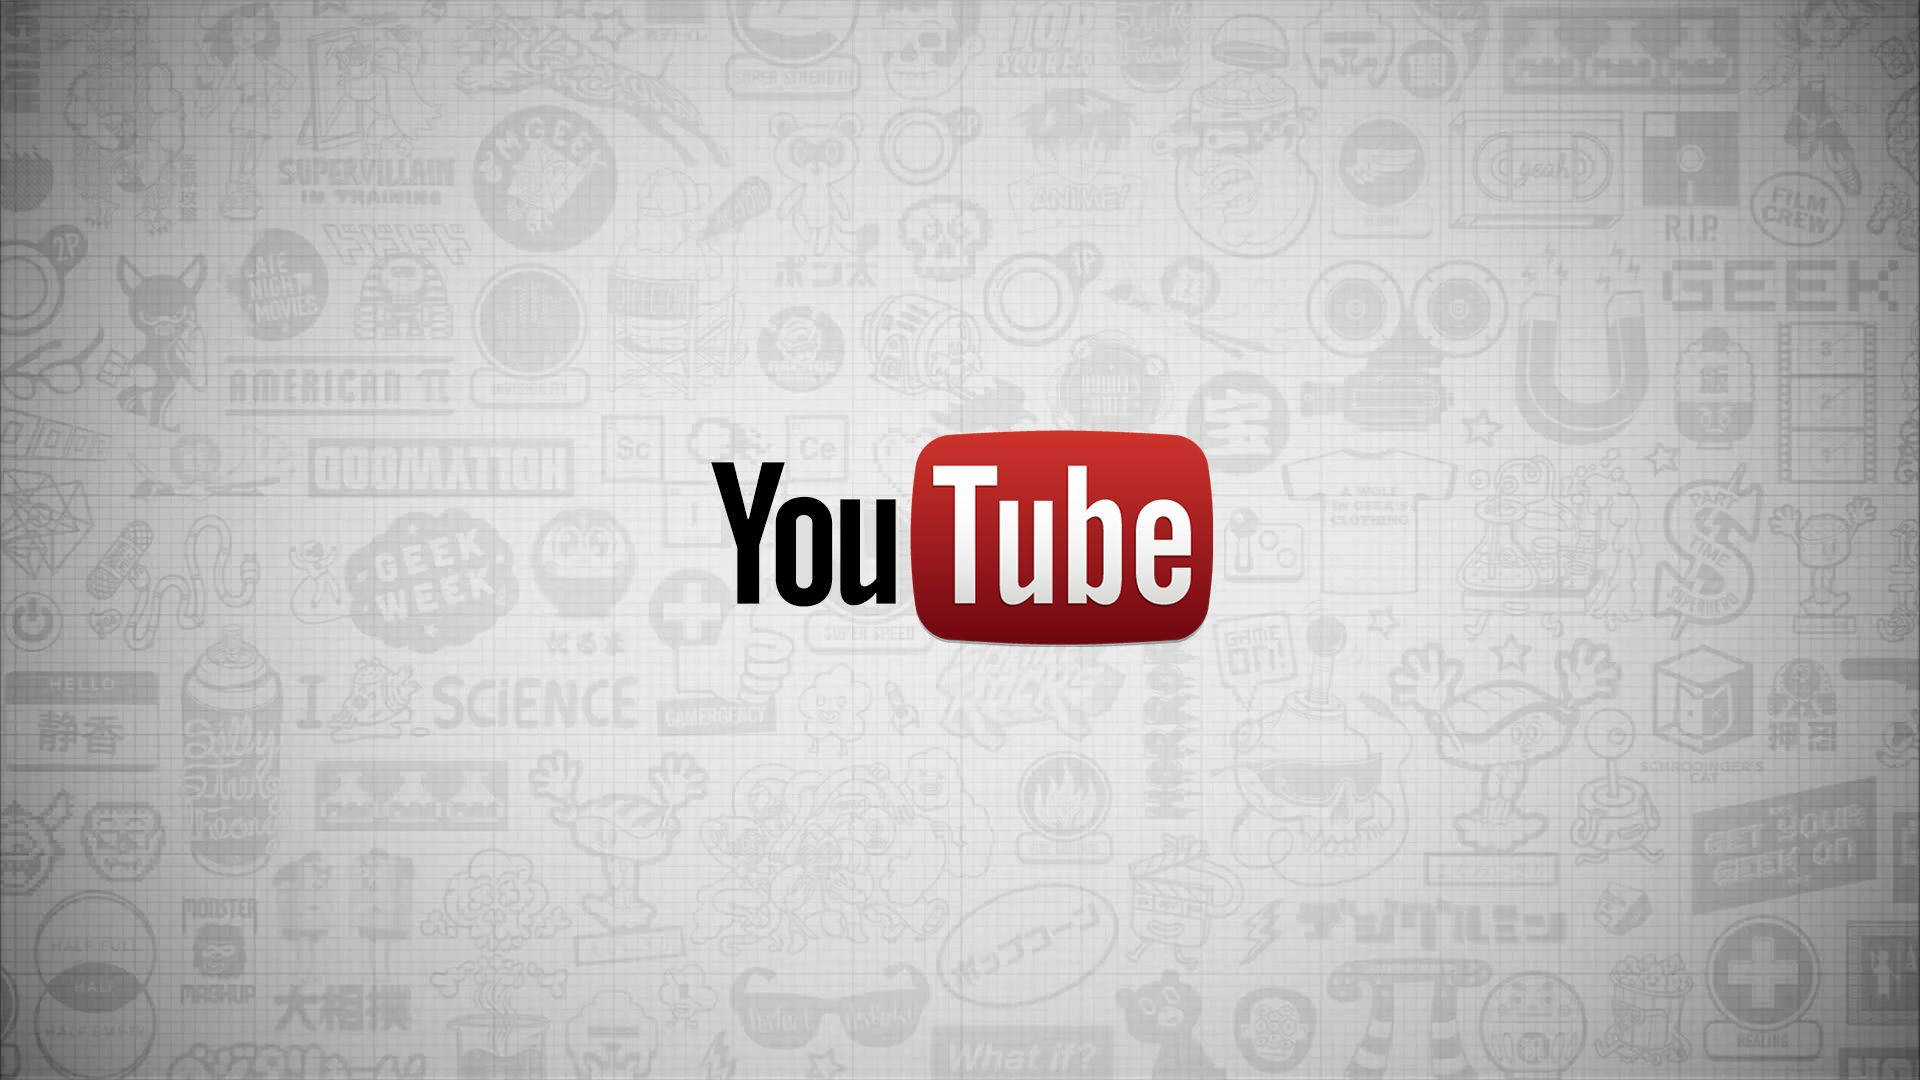 Logode Youtube Sobre Lindos Garabatos En Blanco. Fondo de pantalla